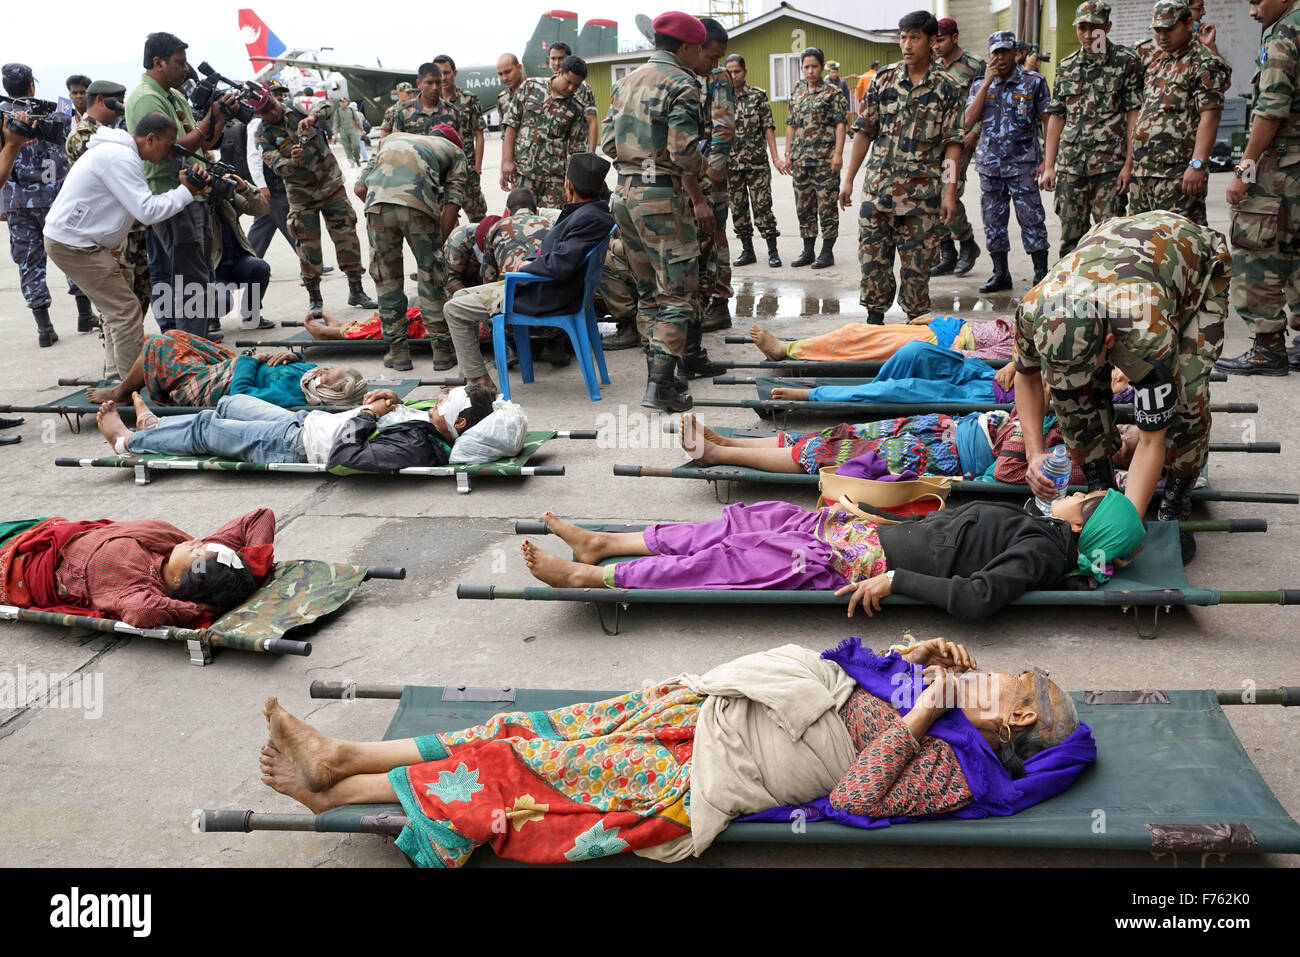 Armee-medizinisches Personal zu behandeln, verletzte Person, Nepal, Asien Stockfoto